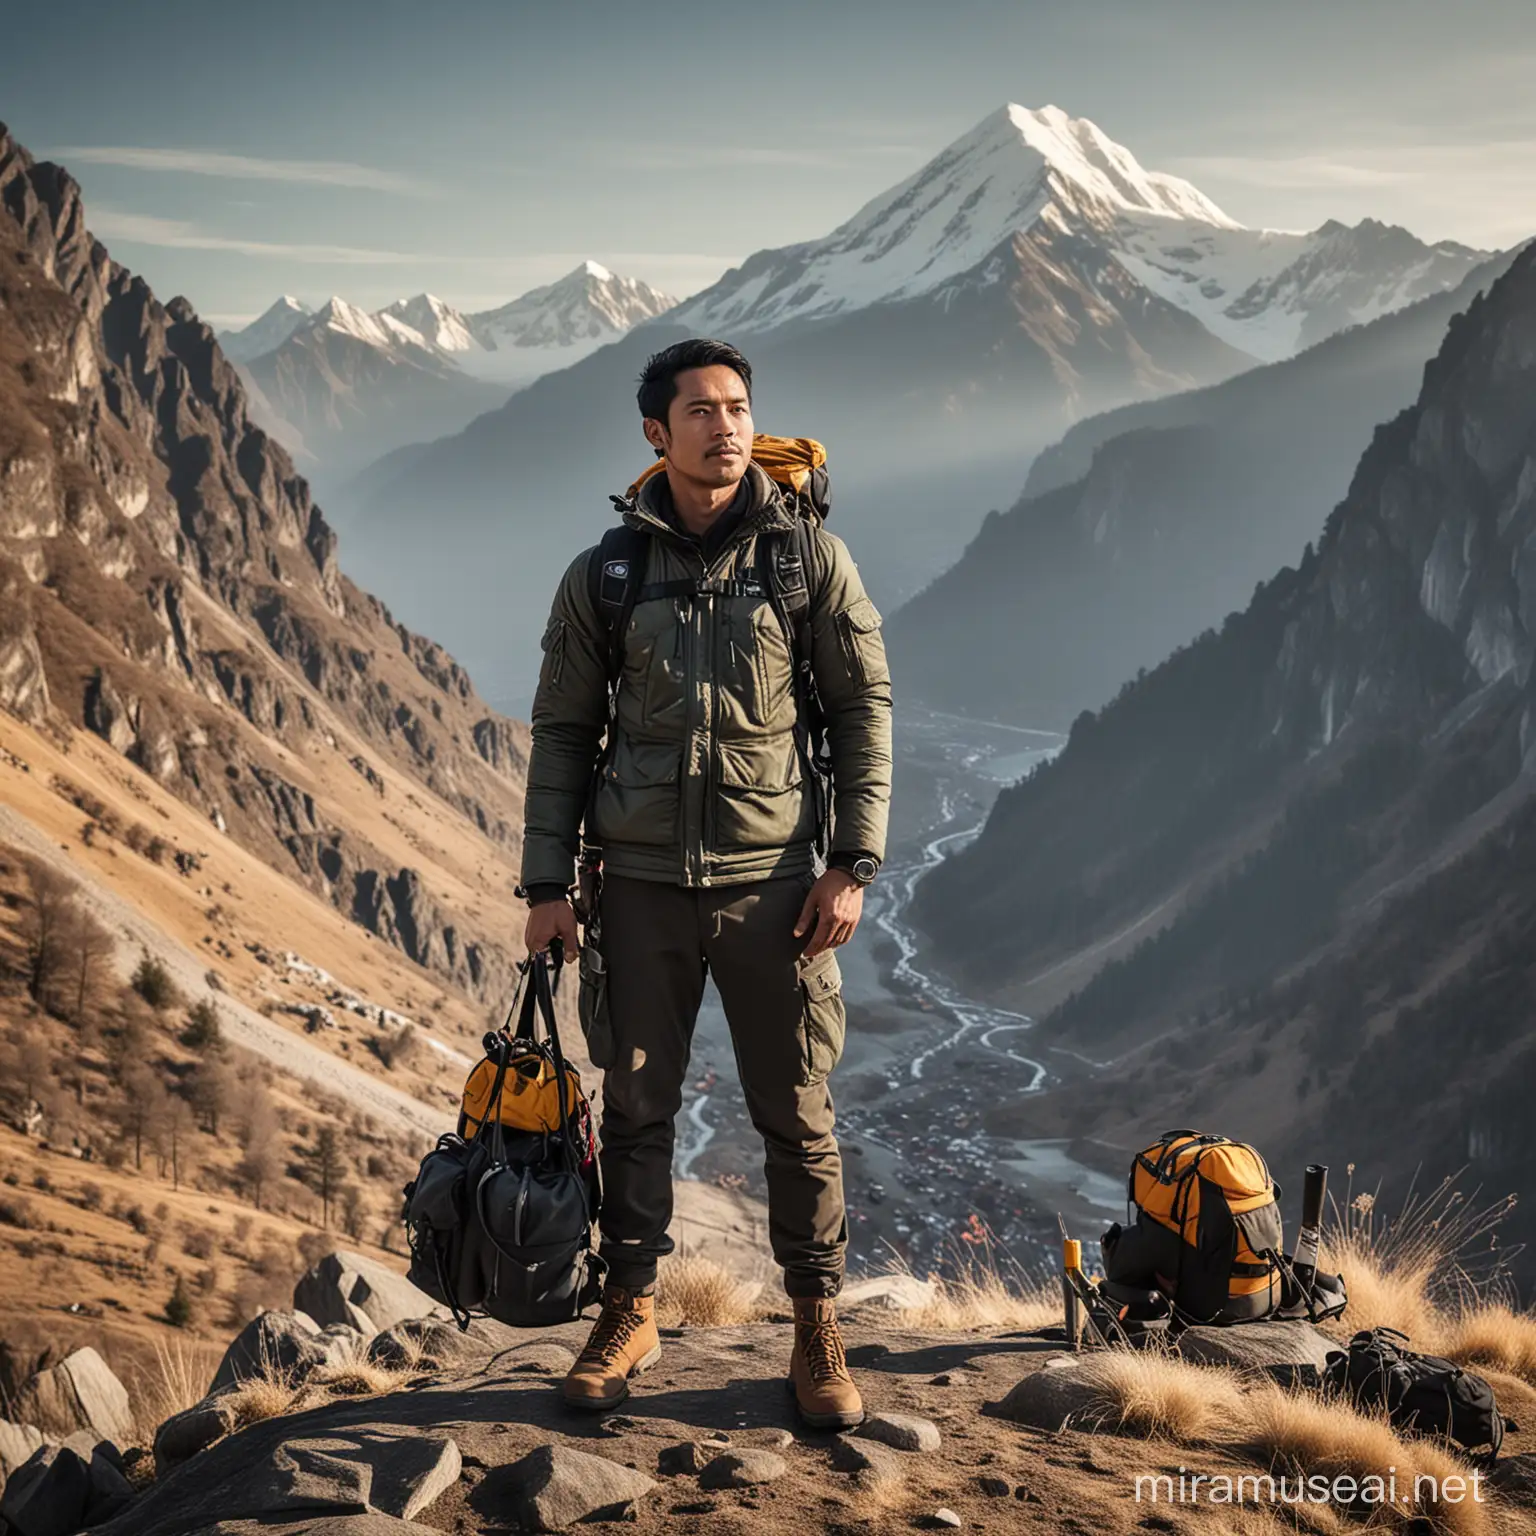 Foto full body pria indonesia umur 30 tahun rambut warna hitam,berparas tampan,dengan style jaket pendaki gunung,lengkap dengan ransel dan alat lainya.
Latar di atas pegunungan yang memukau saat pagi hari
Efek pendaki gunung cantik